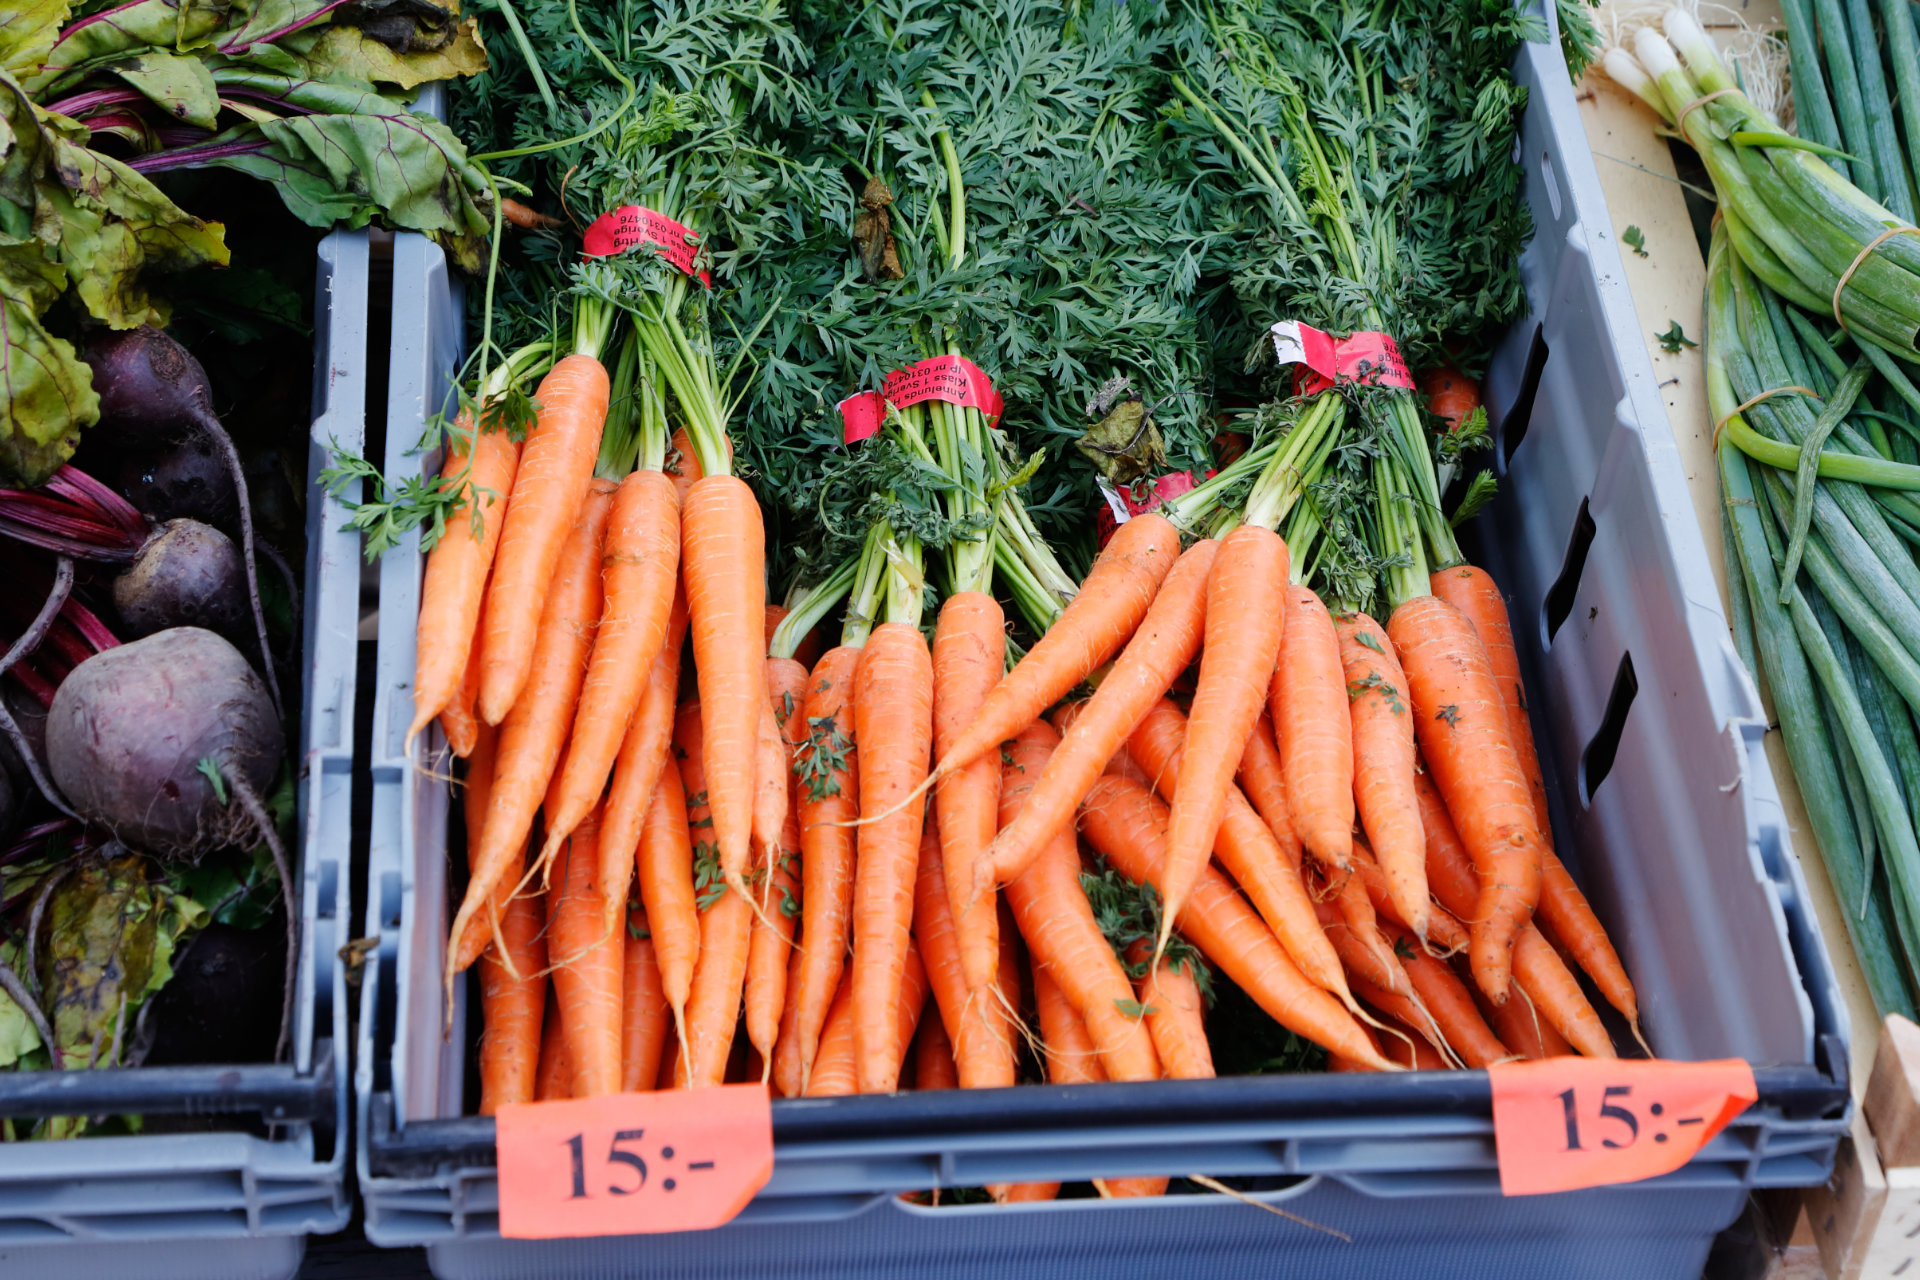 Rödbetor, morötter och salladslök till försäljning i plastbackar. Foto: Mostphotos